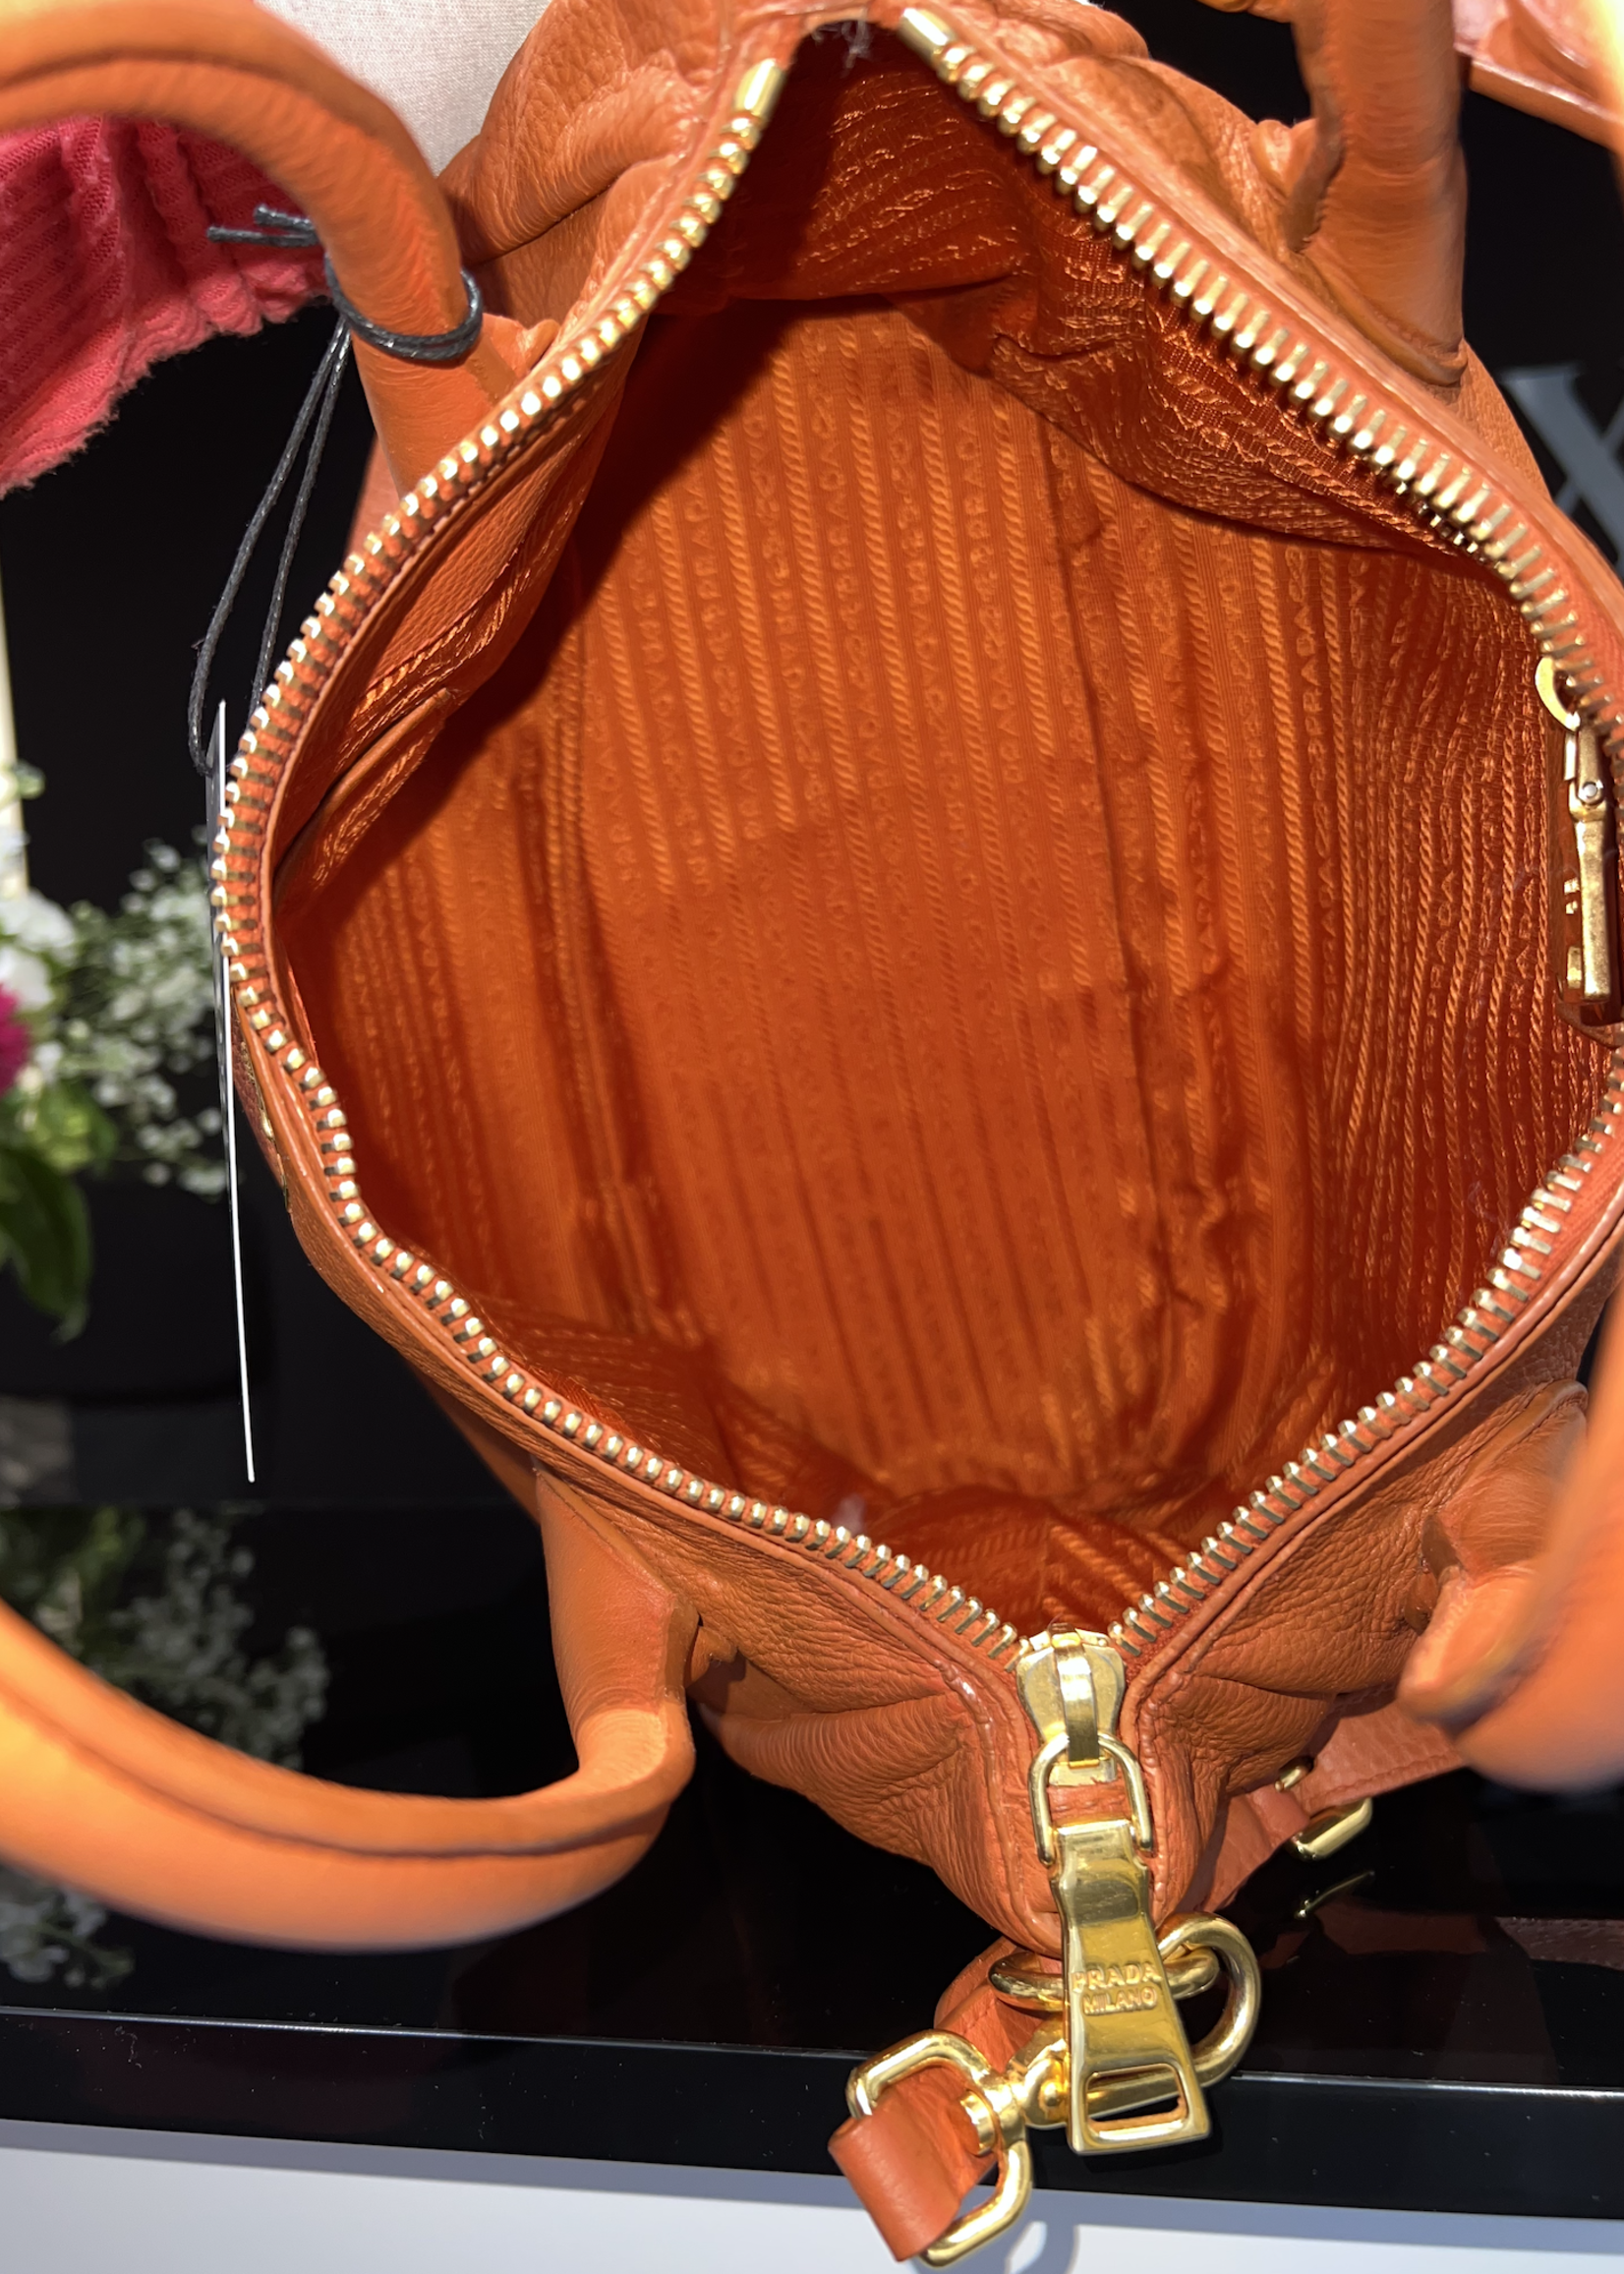 Prada Prada Saffiano Bag- Orange